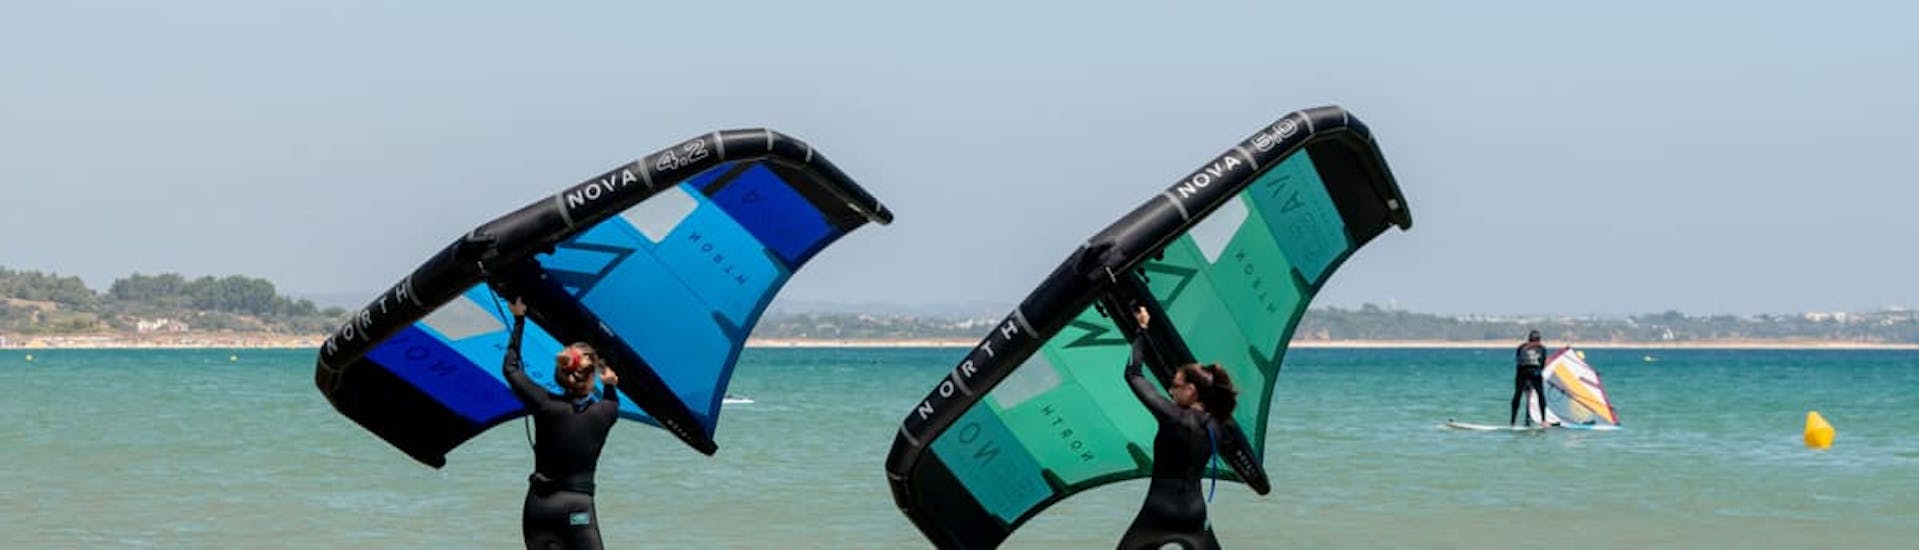 Twee personen tijdens de lessen wing controlling georganiseerd door Algarve Watersports.